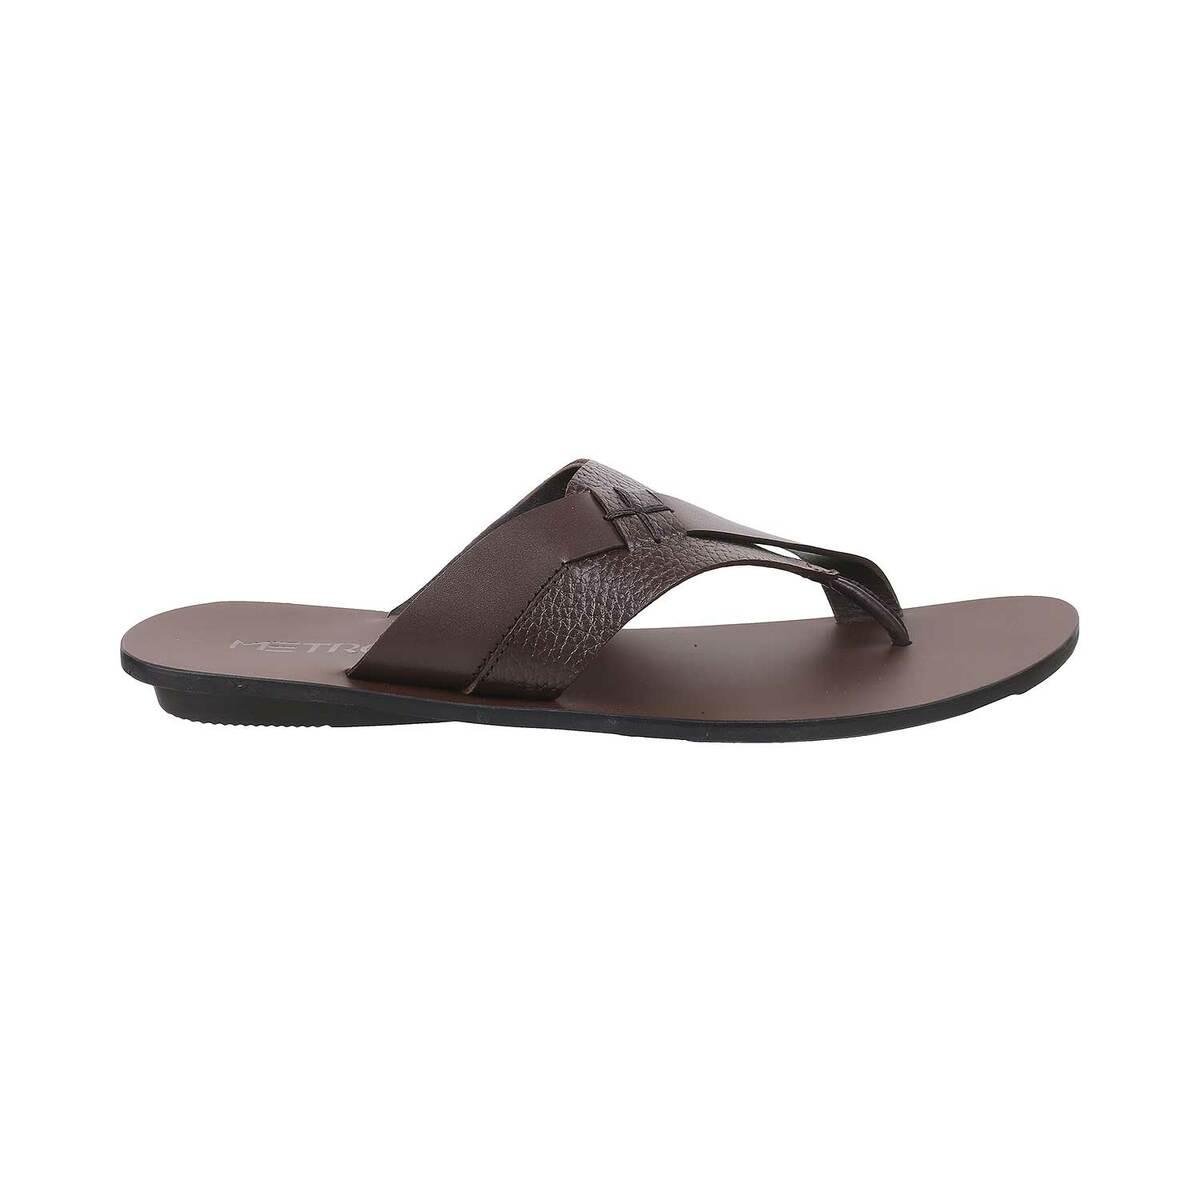 Buy Men Brown Casual Slippers Online | SKU: 16-710-12-40-Metro Shoes